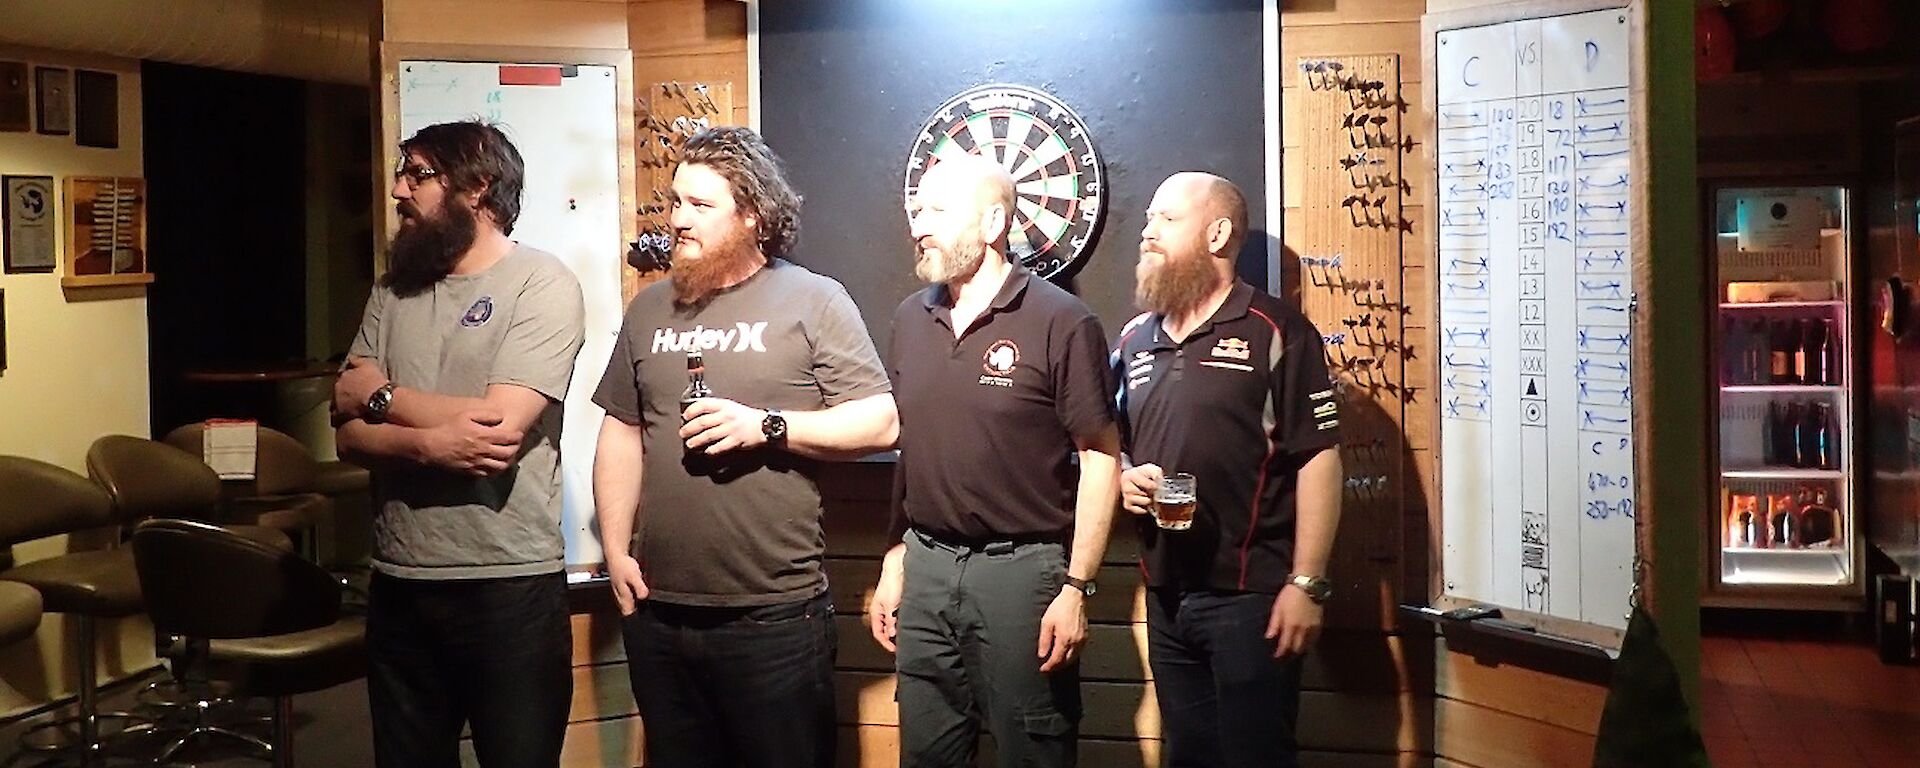 Scottish, Jimbo, Mark and Sealy at darts board